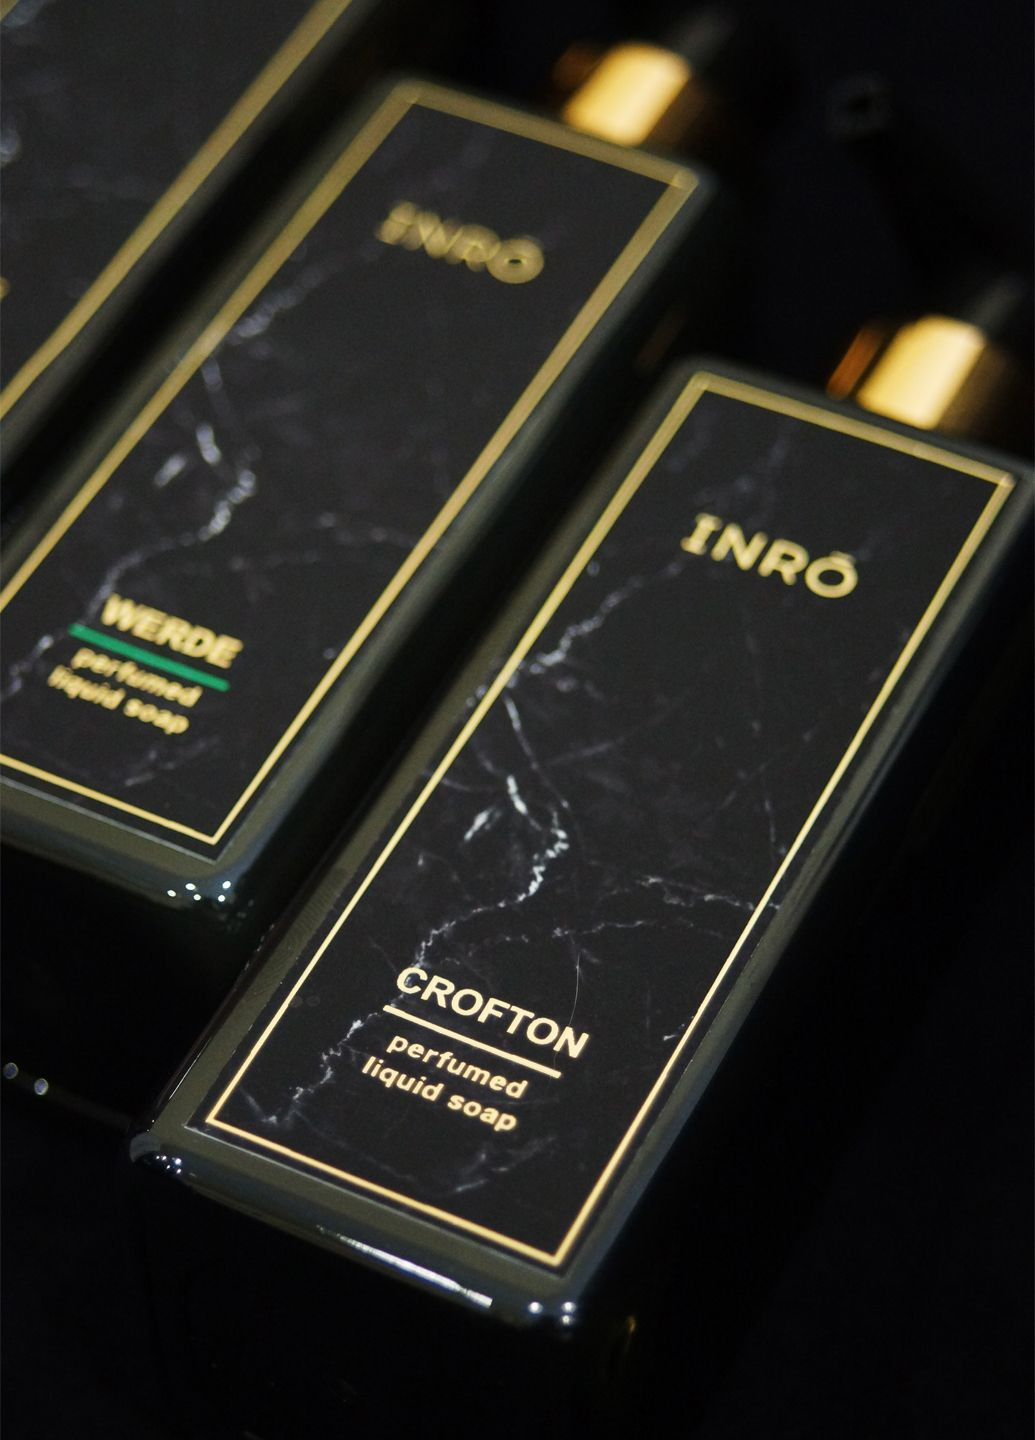 Жидкое мыло парфюмированное "CROFTON" 200 мл INRO (280916376)